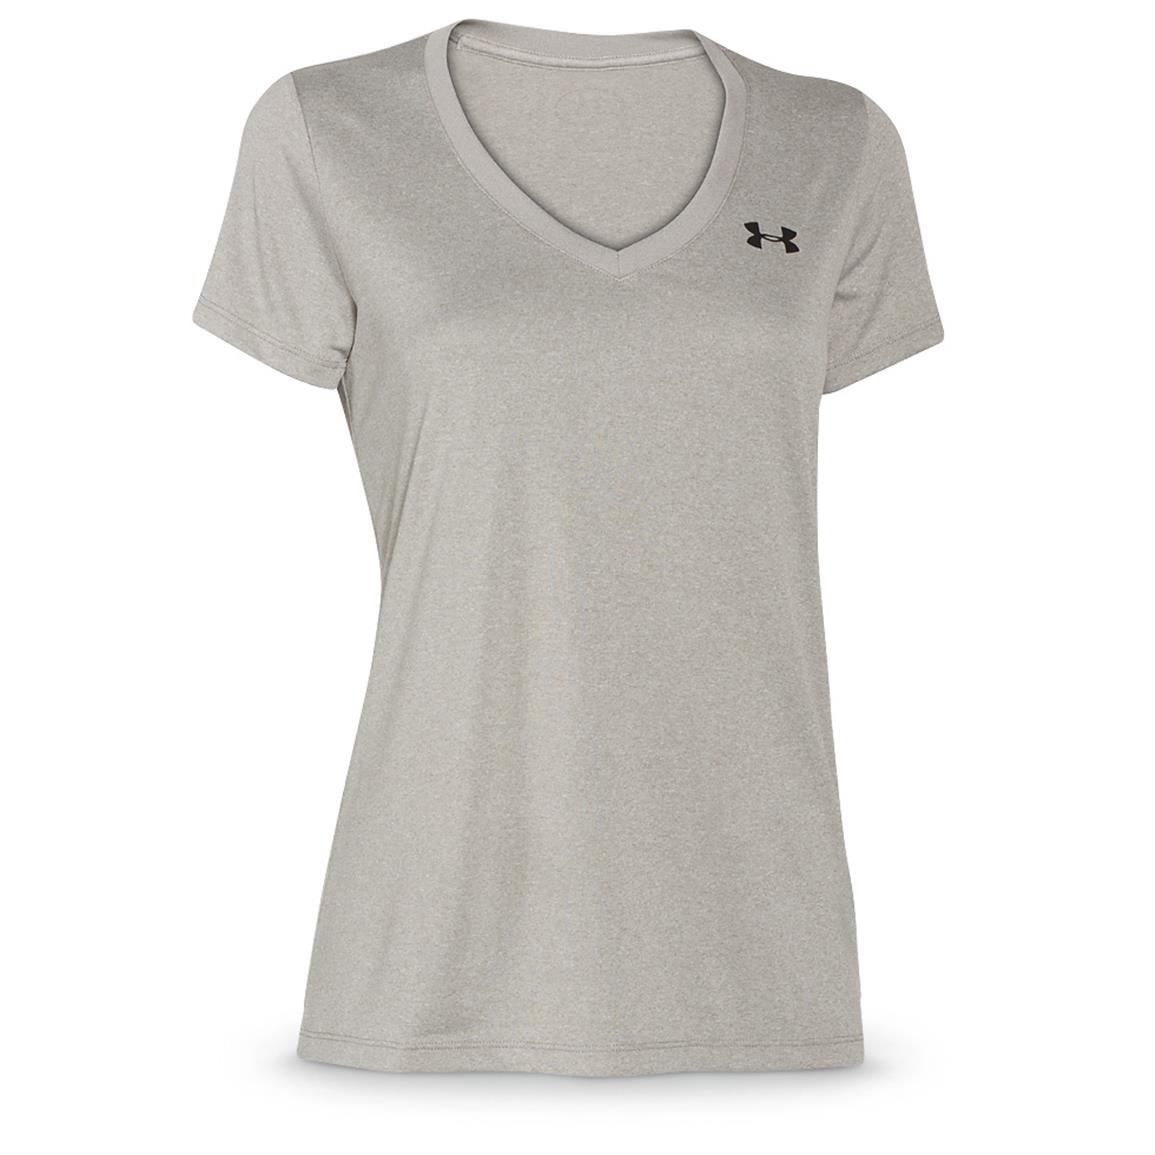 Under Armour Women's Tech Short-Sleeve Shirt - 619659, Shirts & Tops at ...